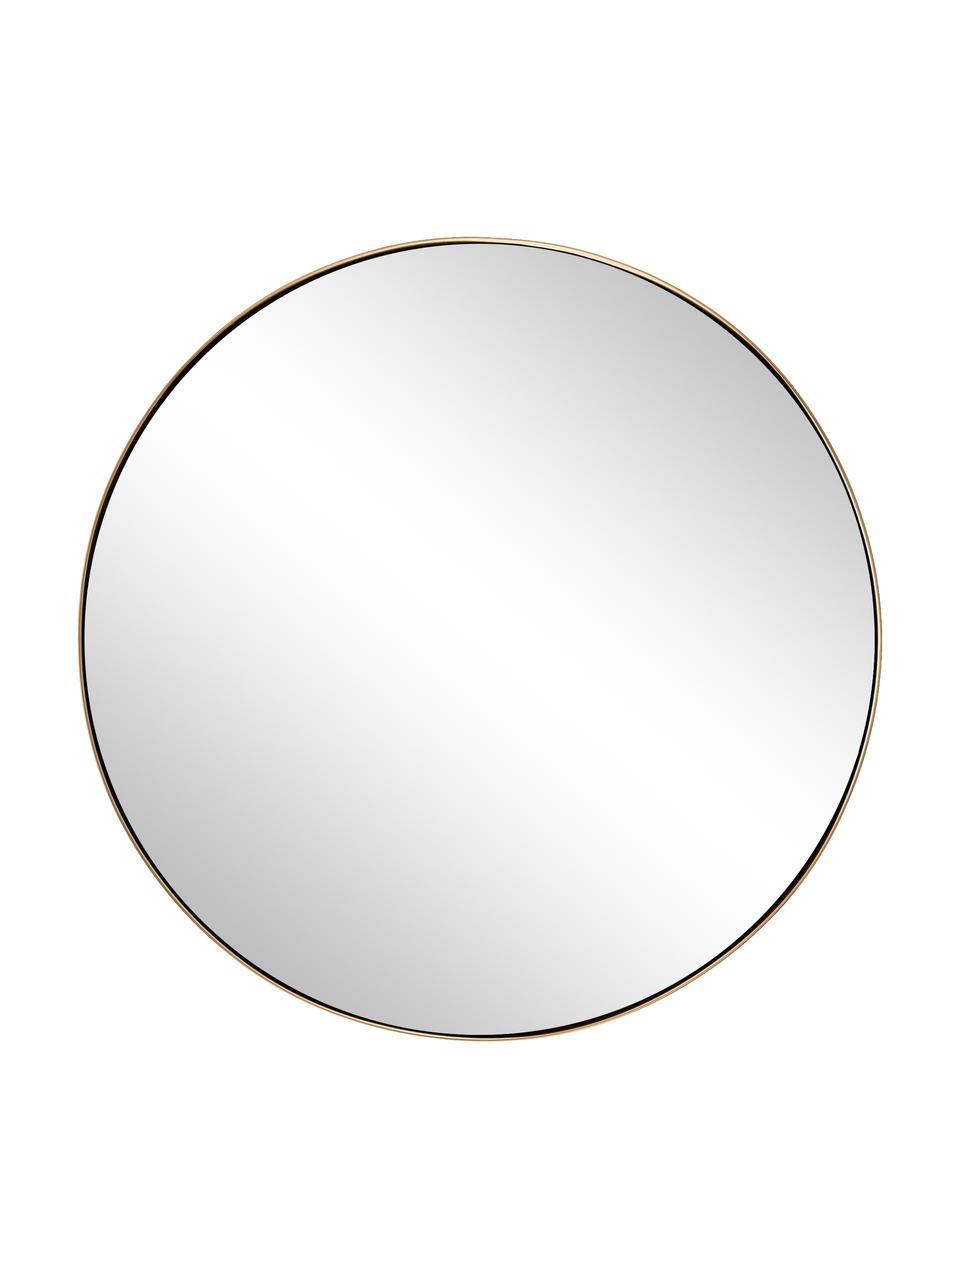 Runder Wandspiegel Lacie mit goldenem Metallrahmen, Rahmen: Metall, beschichtet, Rückseite: Mitteldichte Holzfaserpla, Spiegelfläche: Spiegelglas, Goldfarben, Ø 55 cm